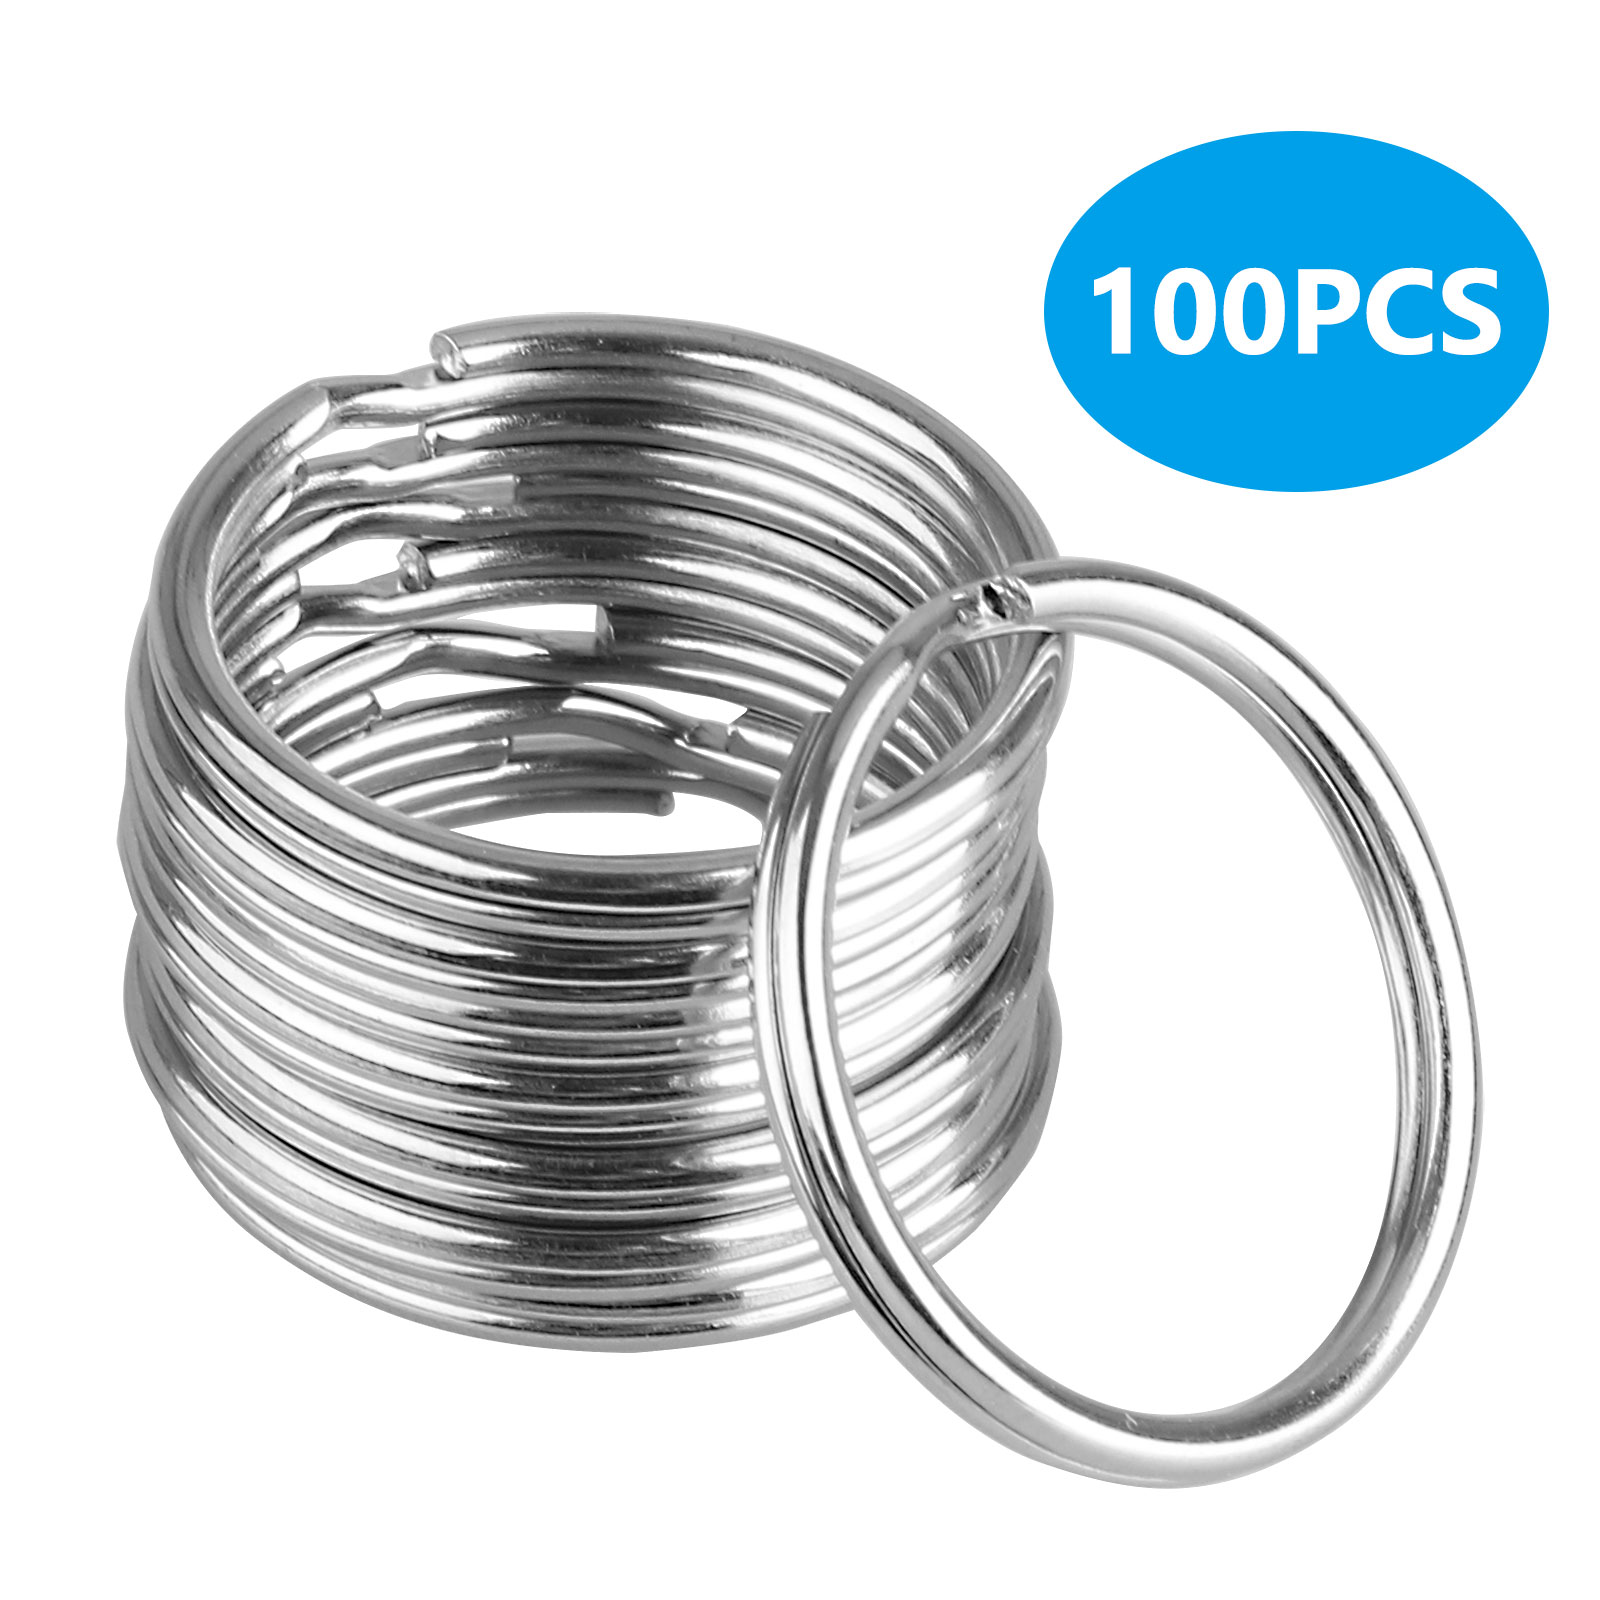 100Pcs Key Rings Chains Split Ring Hoop Metal Loop Steel Accessories 25mm LoT 